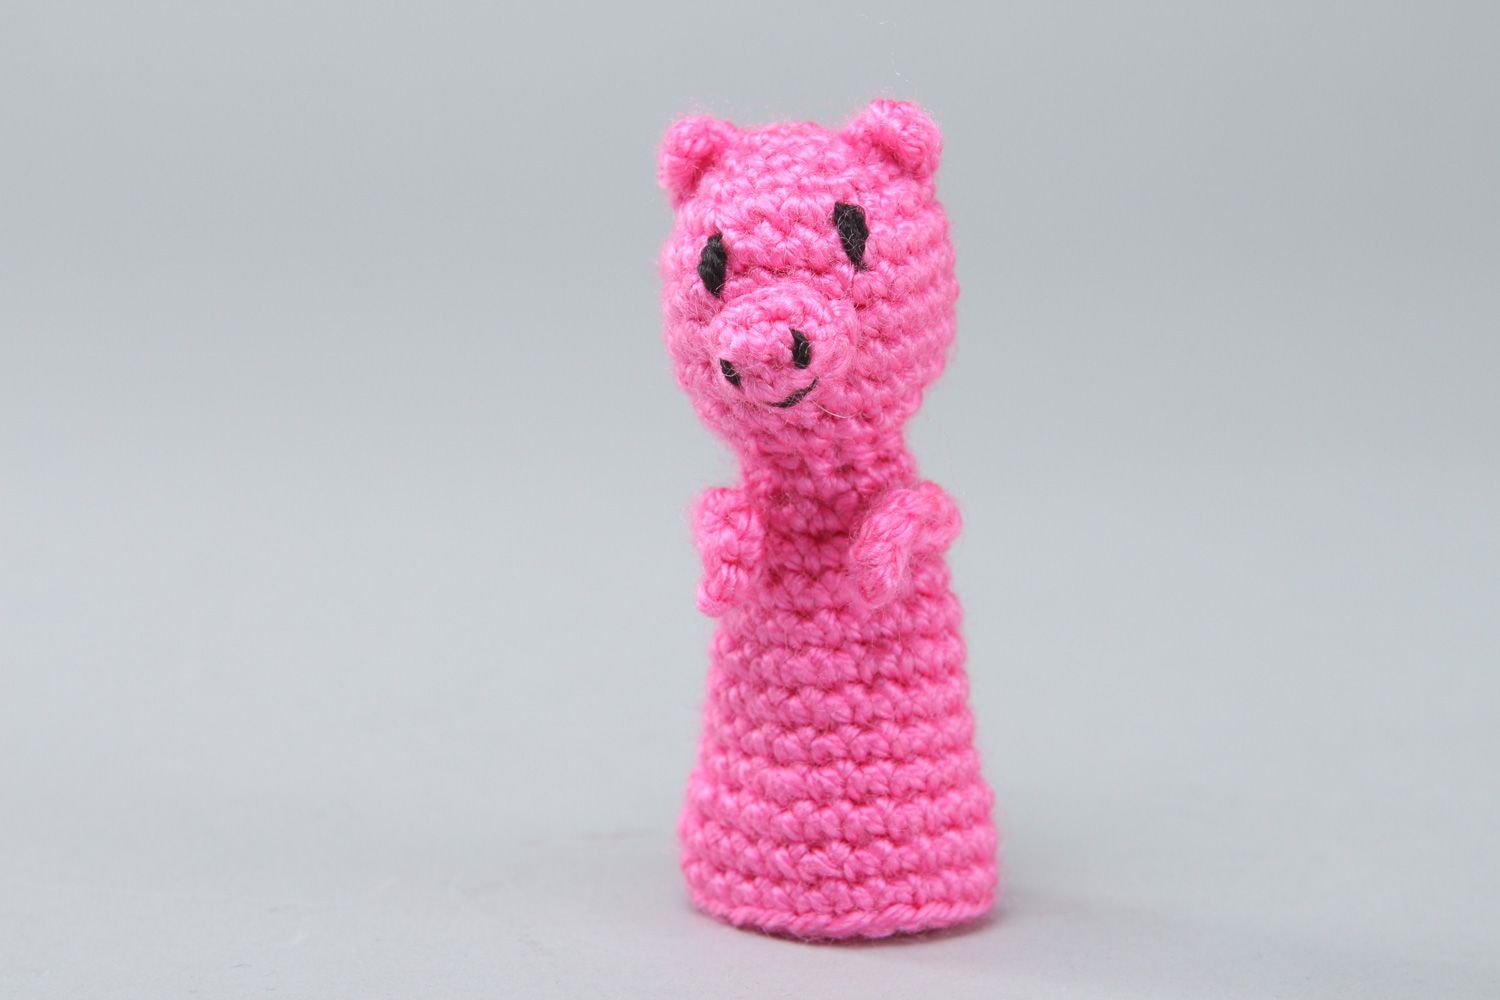 Пальчиковая игрушка свинка вязанная крючком детская розовая фото 1